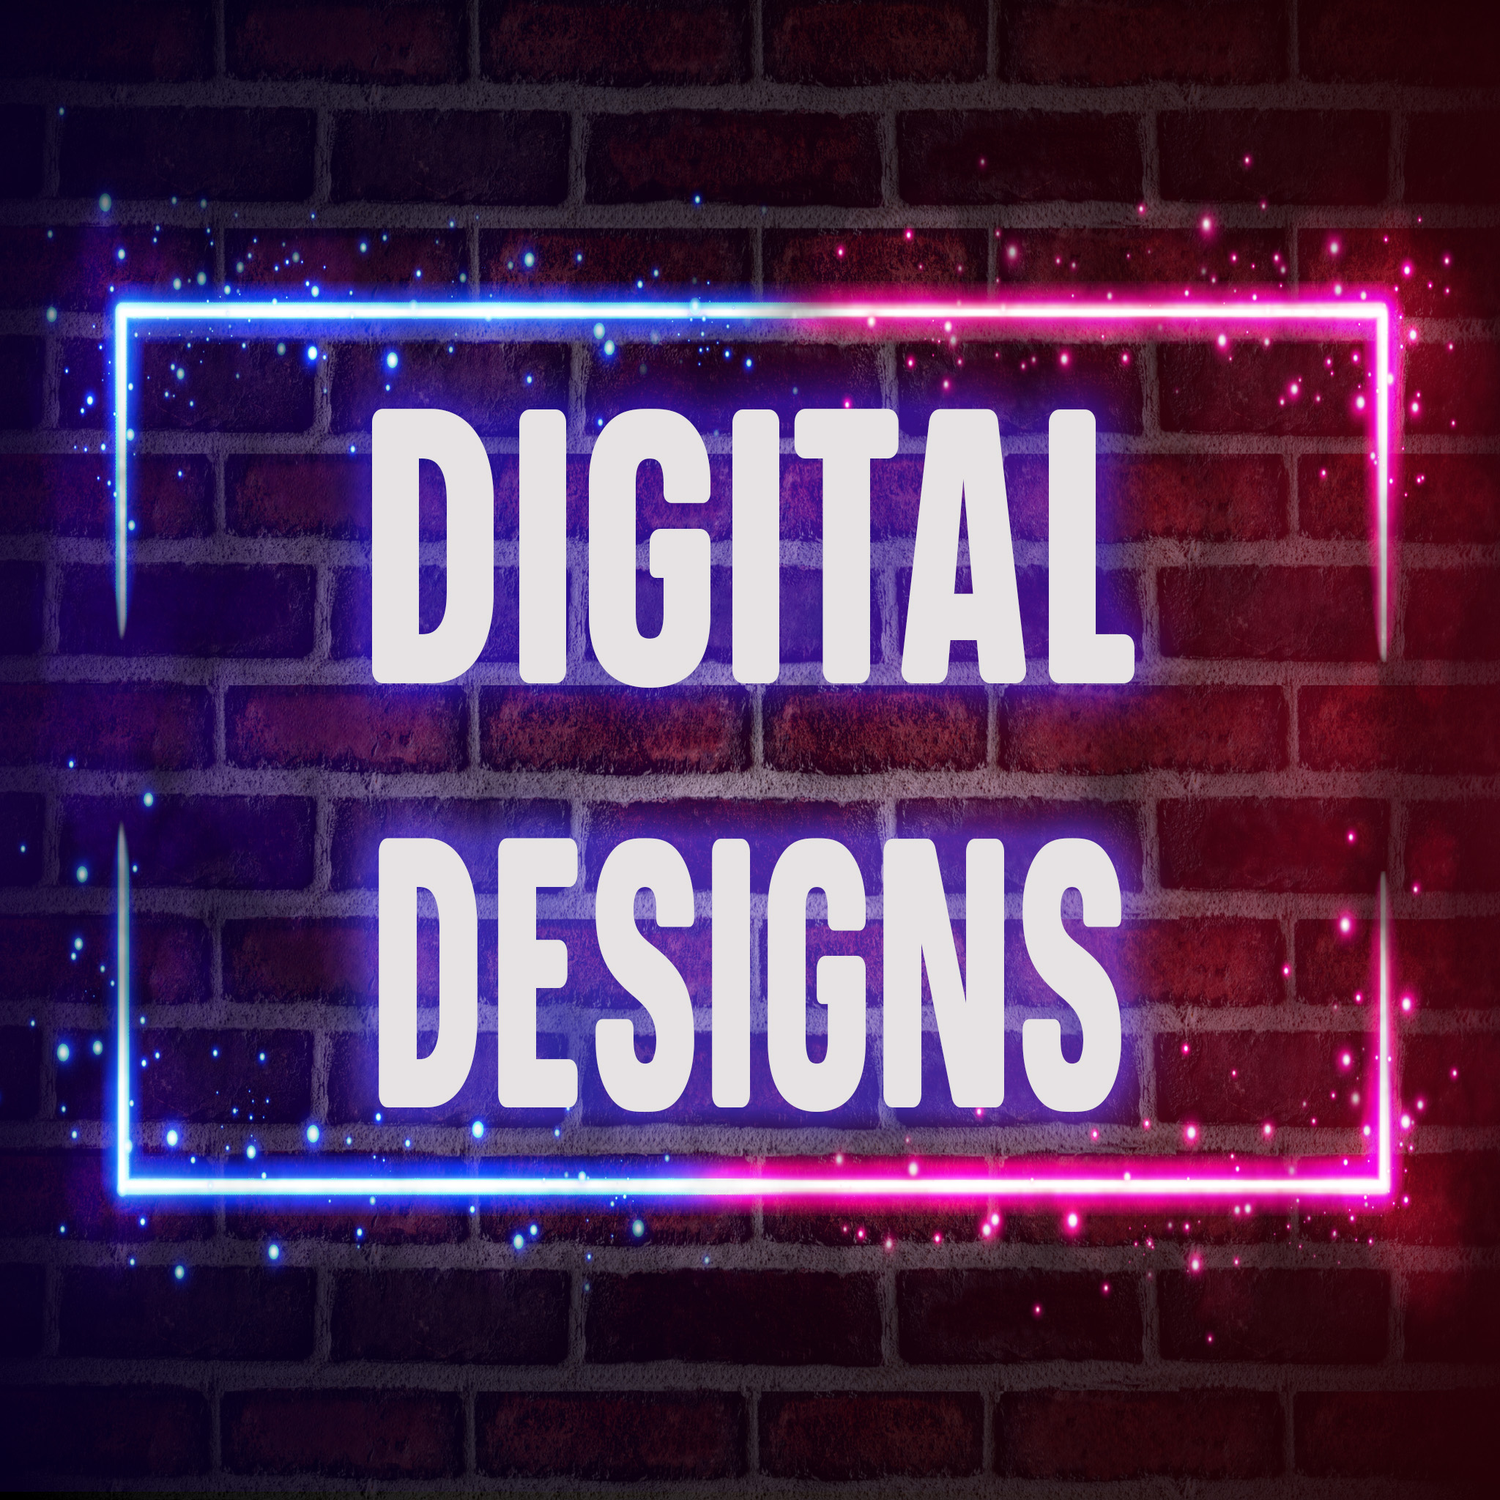 Digital Designs COMING SOON!